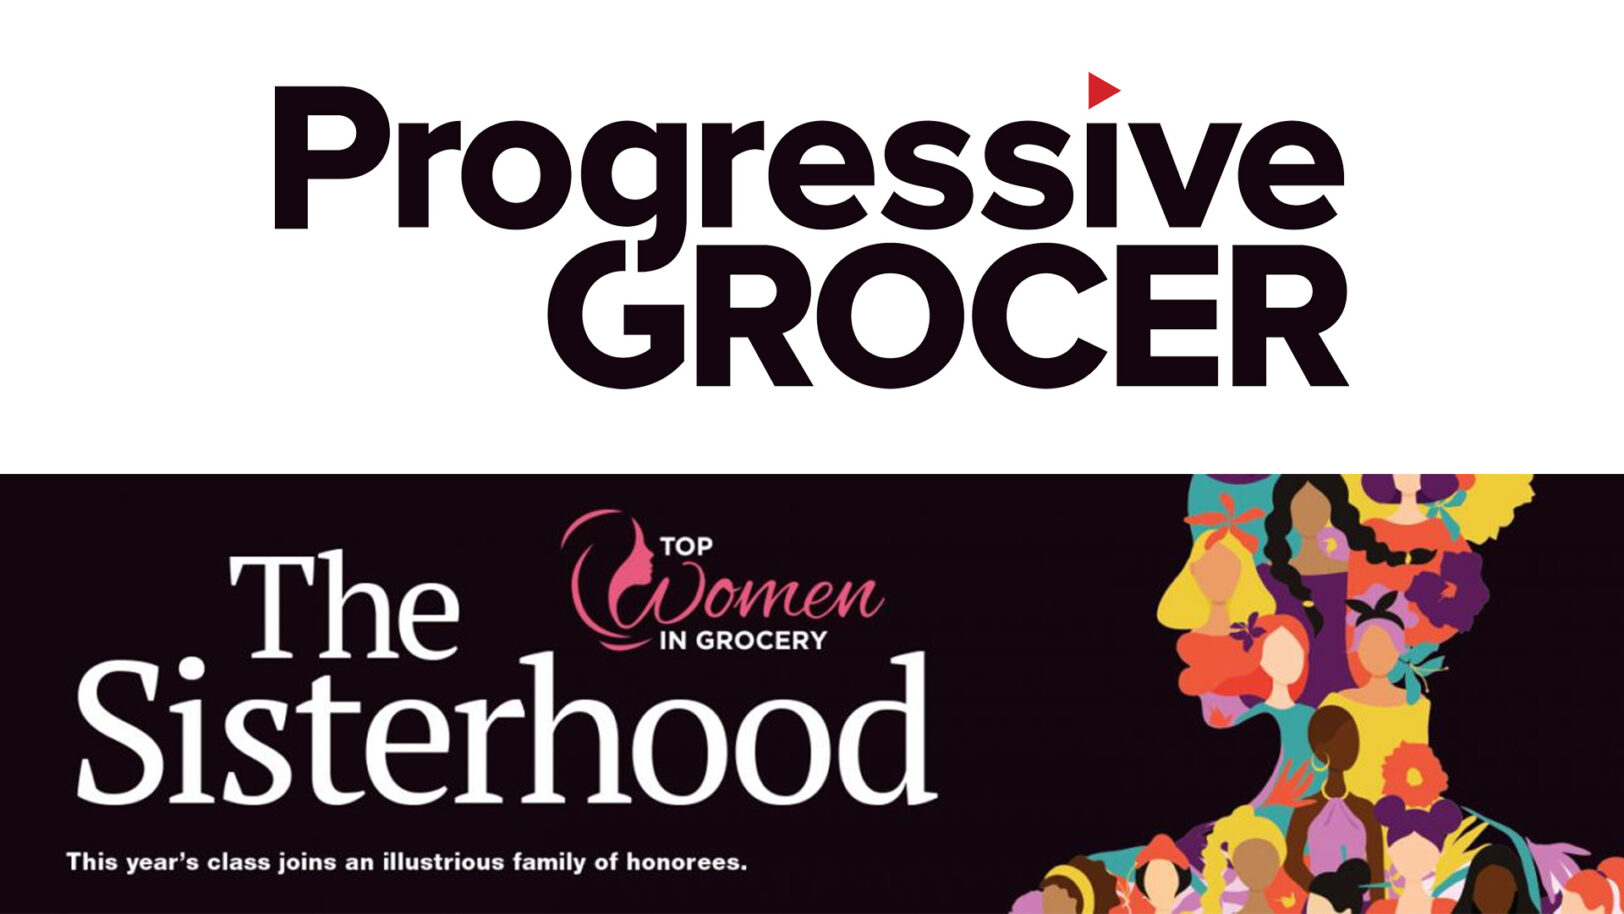 Progressive Grocer & Top Women in Grocery